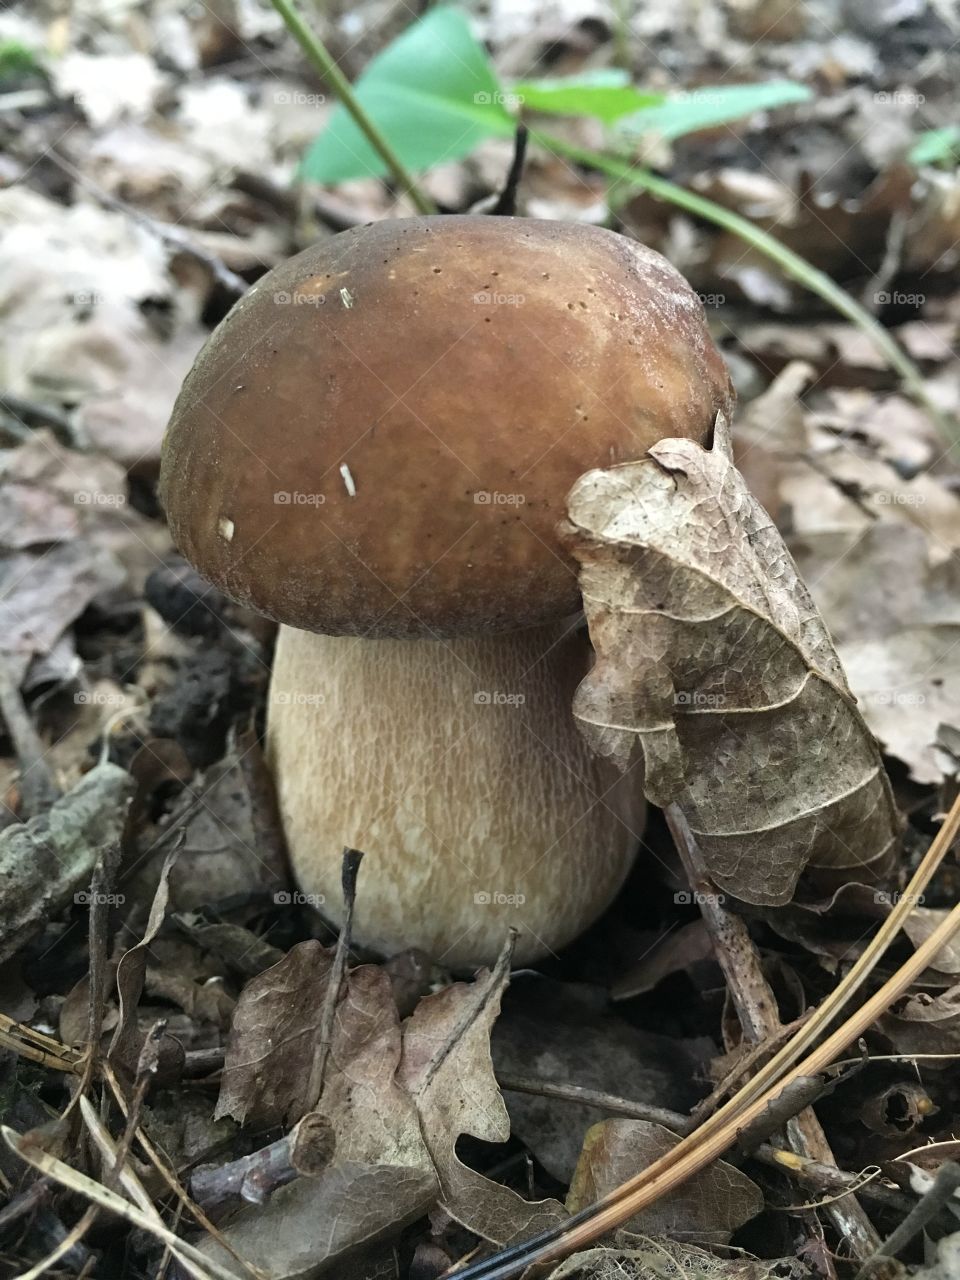 Fungus, Mushroom, Boletus, Fall, Nature